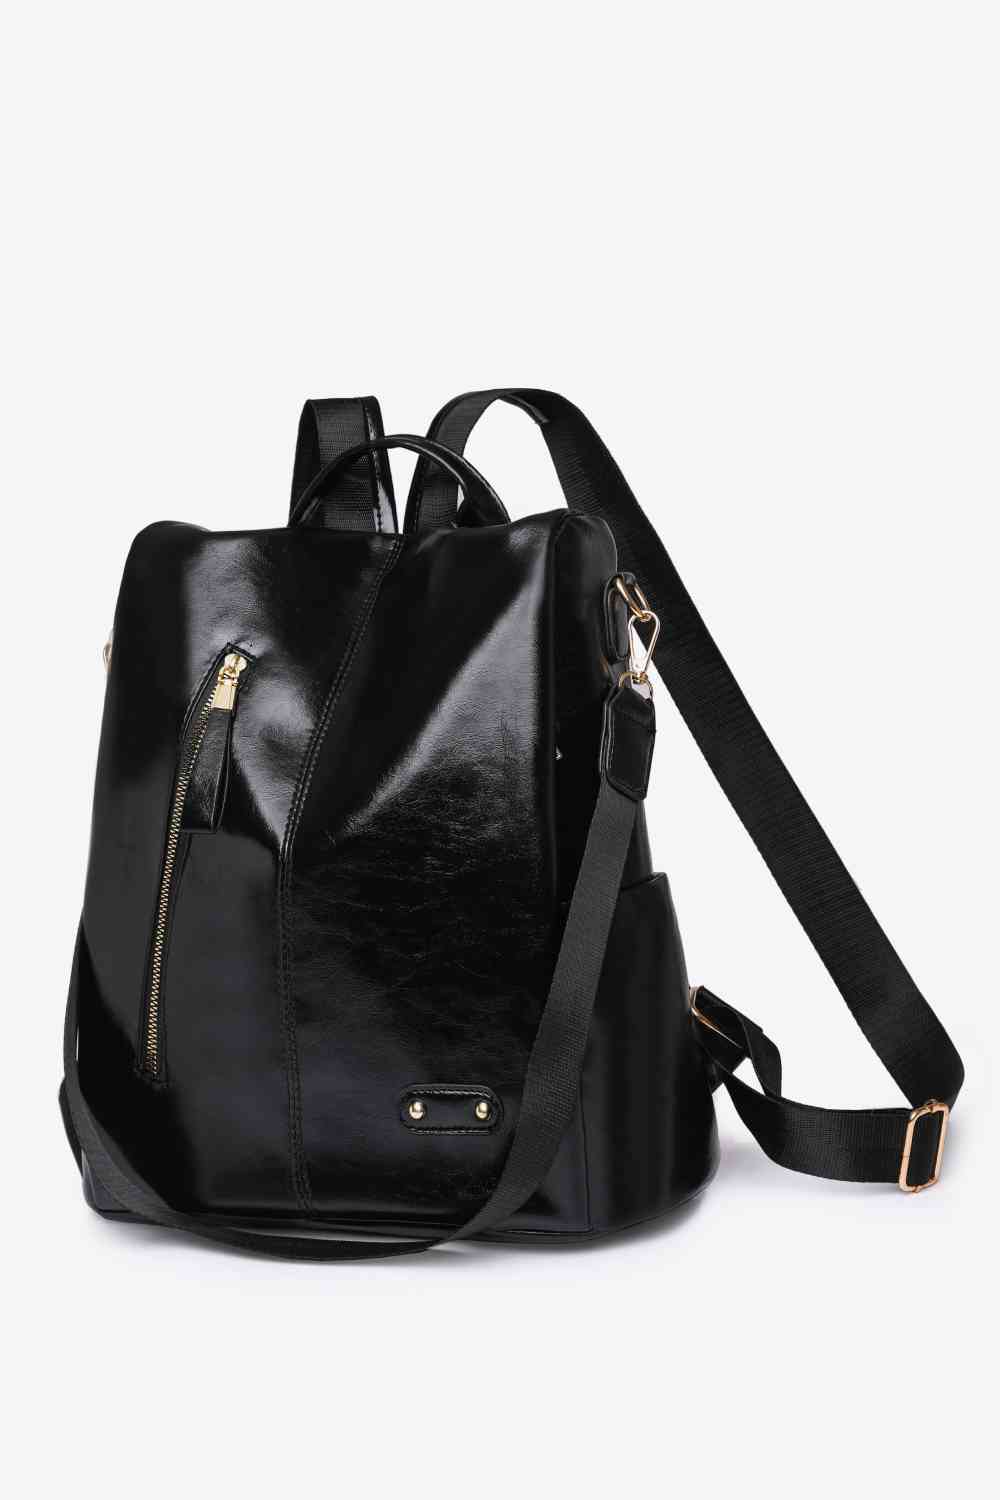 Zipper Pocket Backpack Black One Size 